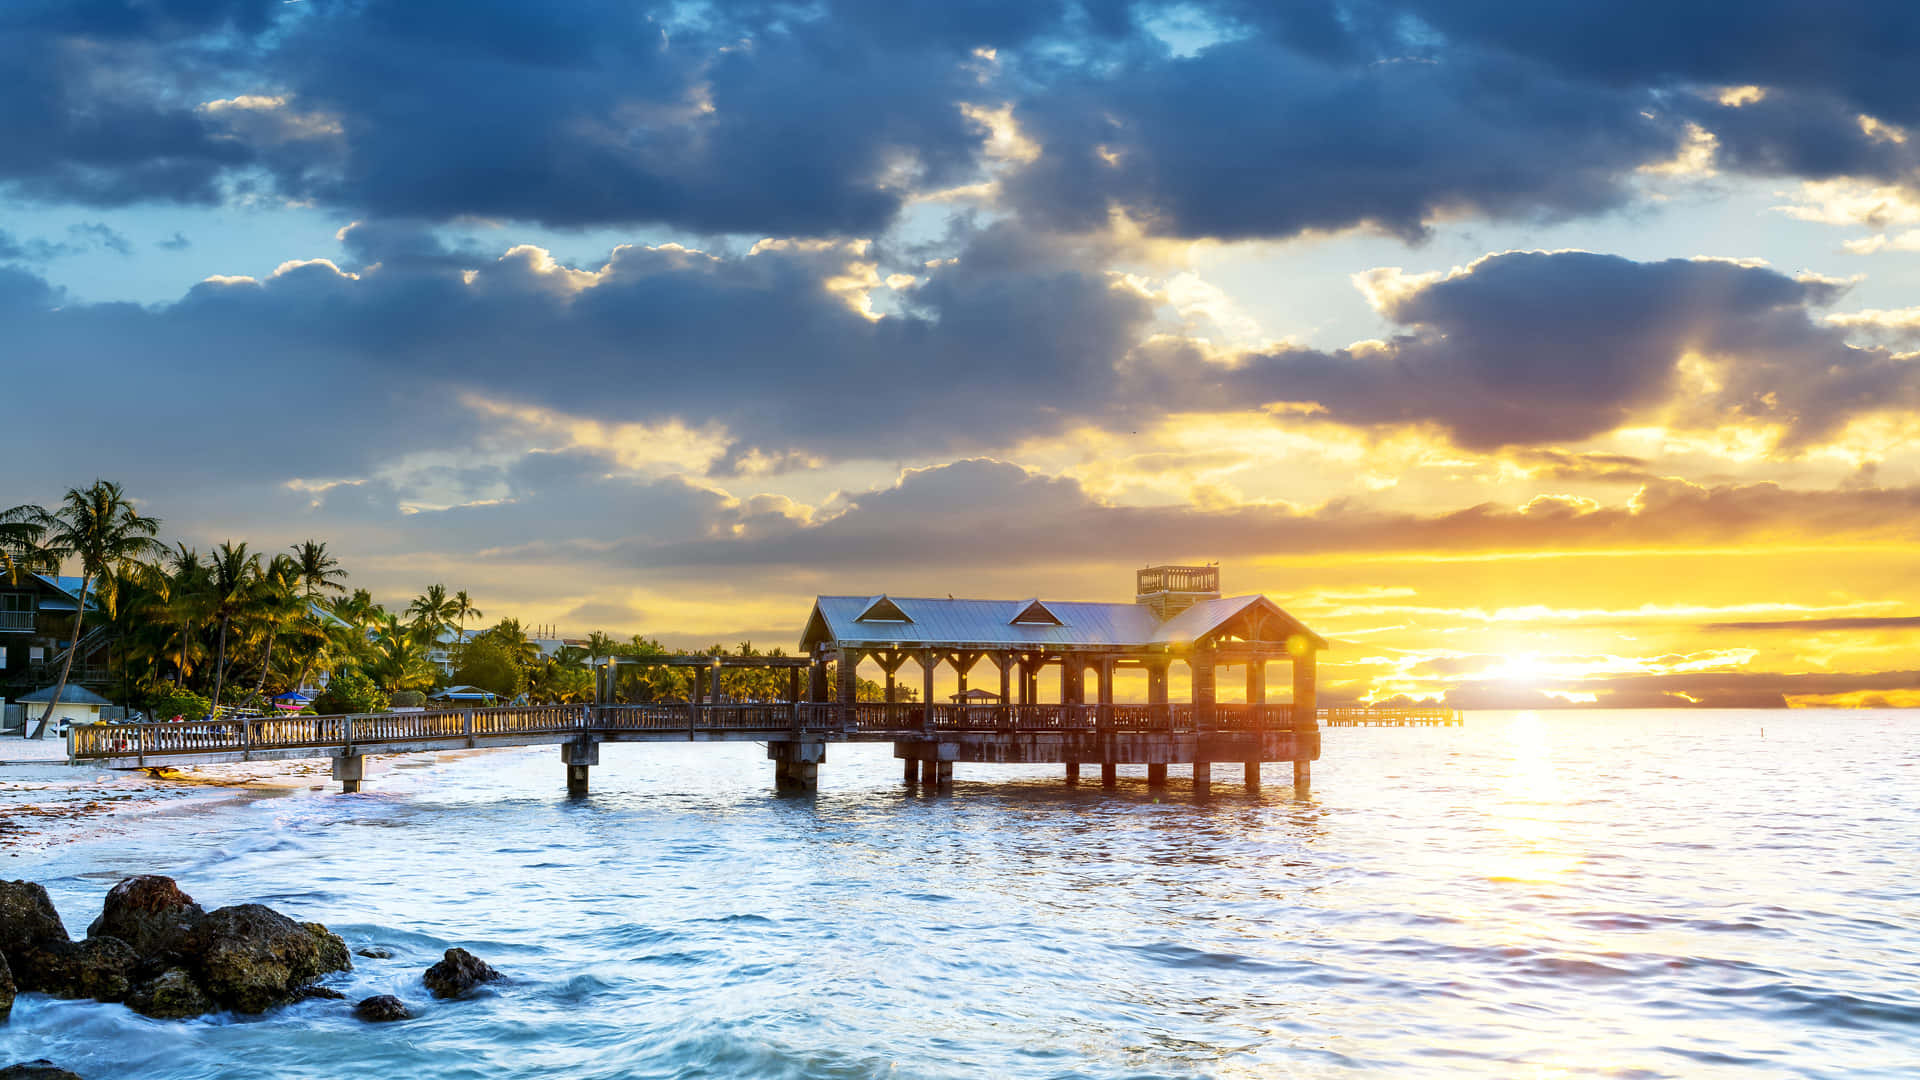 Opsuge den lokale kultur i den tropiske brise fra Key West!